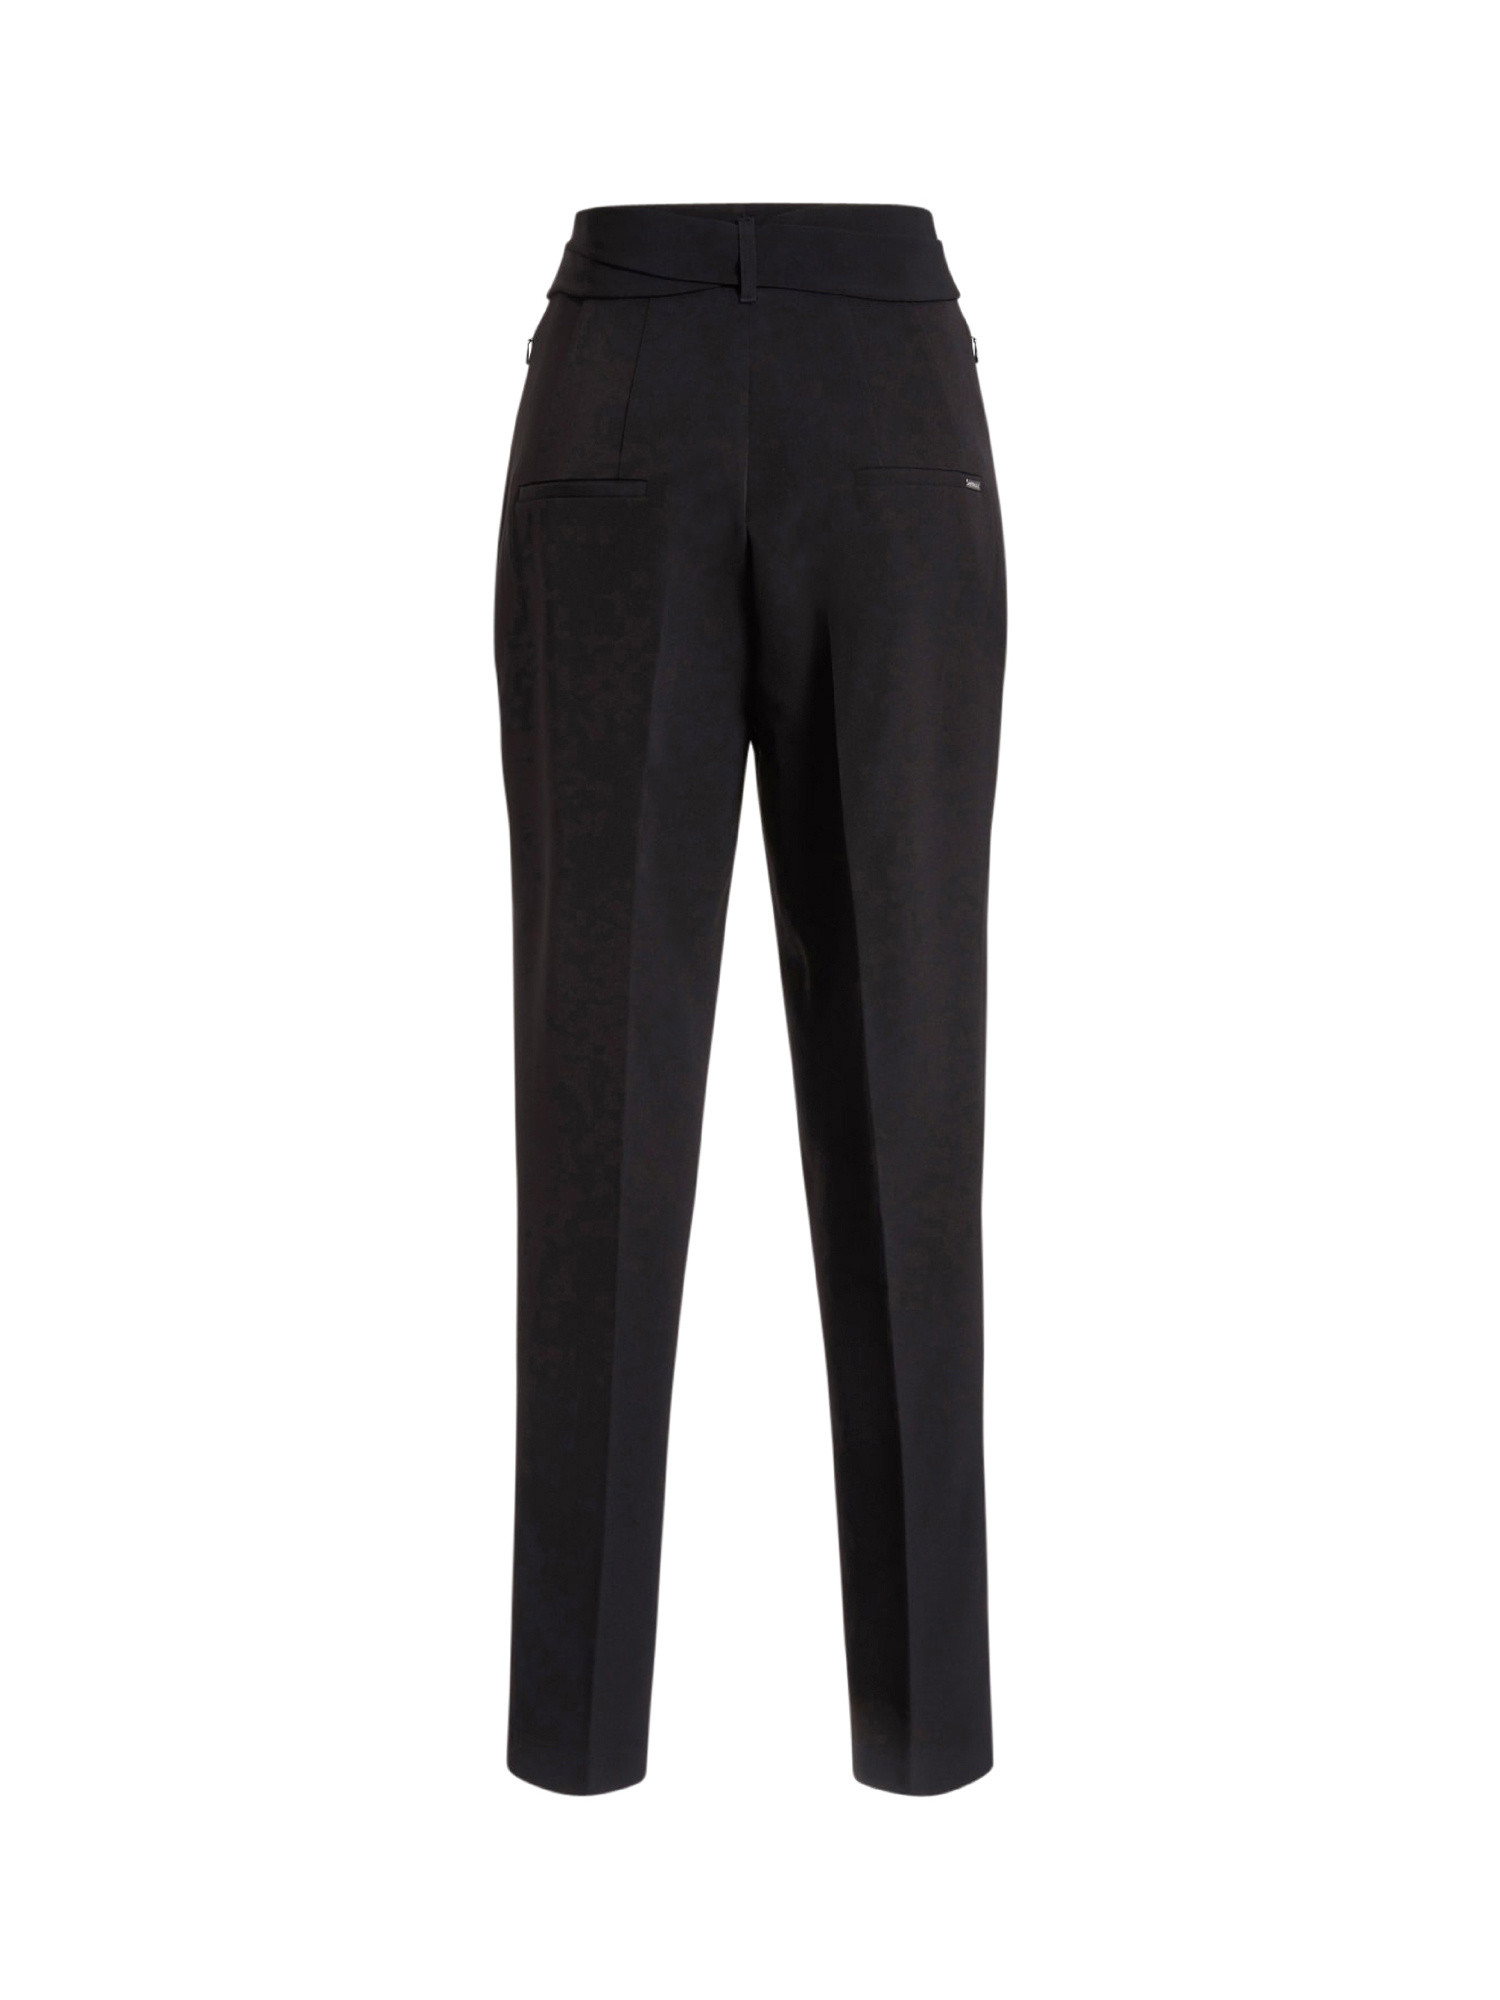 Pantalone cintura, Nero, large image number 1